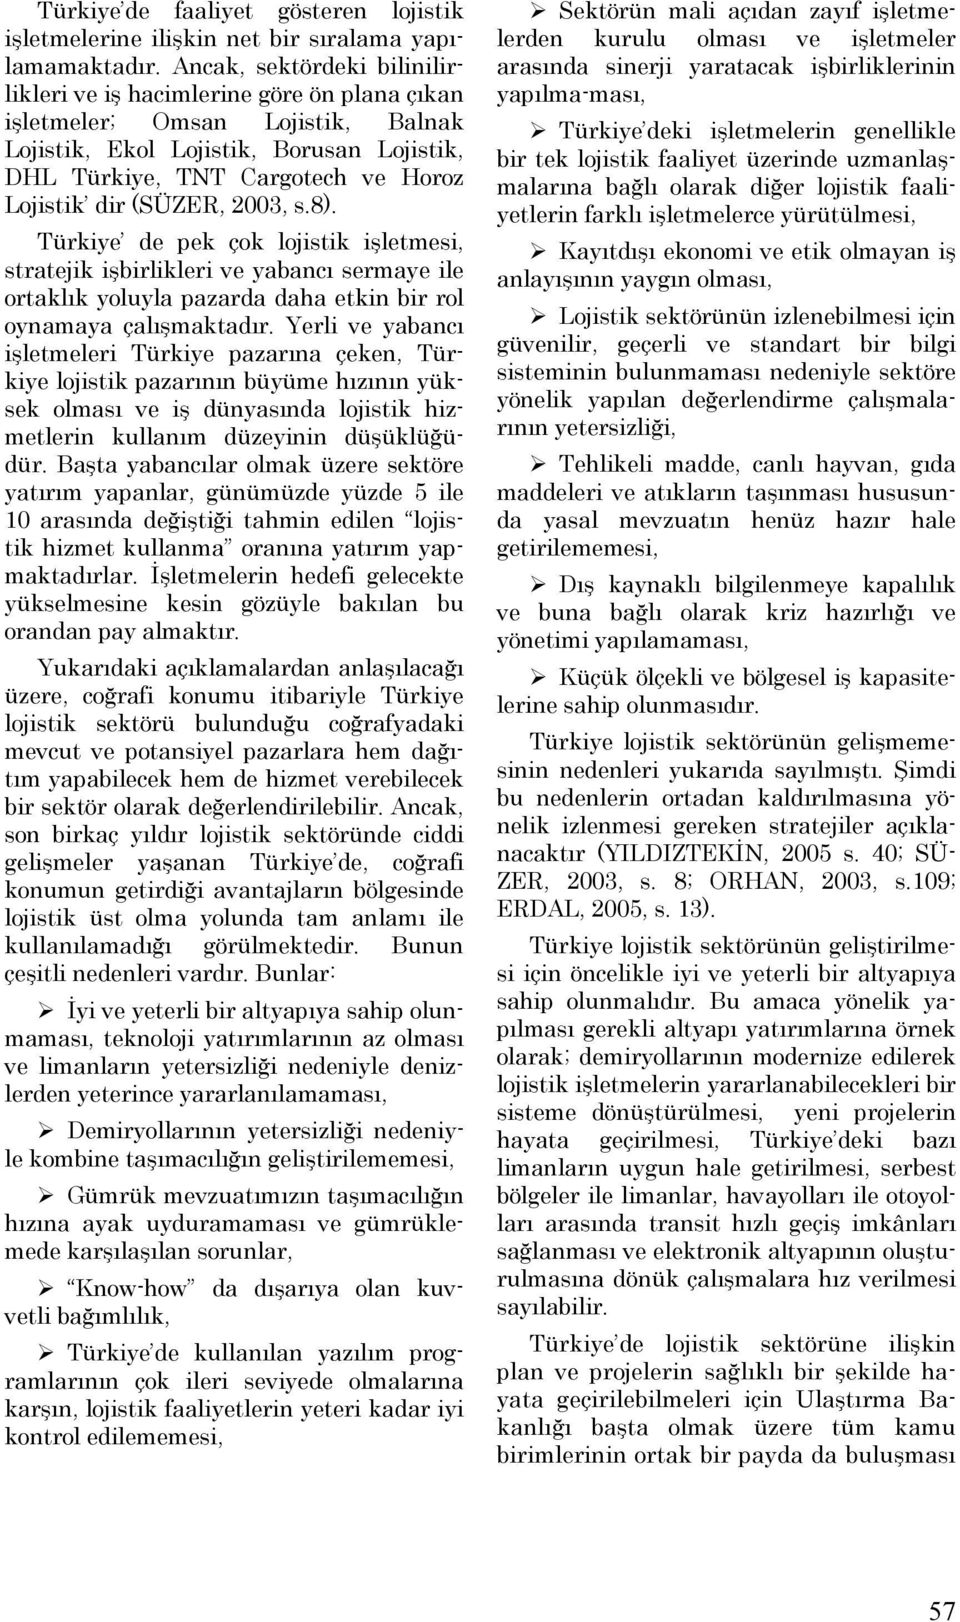 (SÜZER, 2003, s.8). Türkiye de pek çok lojistik işletmesi, stratejik işbirlikleri ve yabancı sermaye ile ortaklık yoluyla pazarda daha etkin bir rol oynamaya çalışmaktadır.